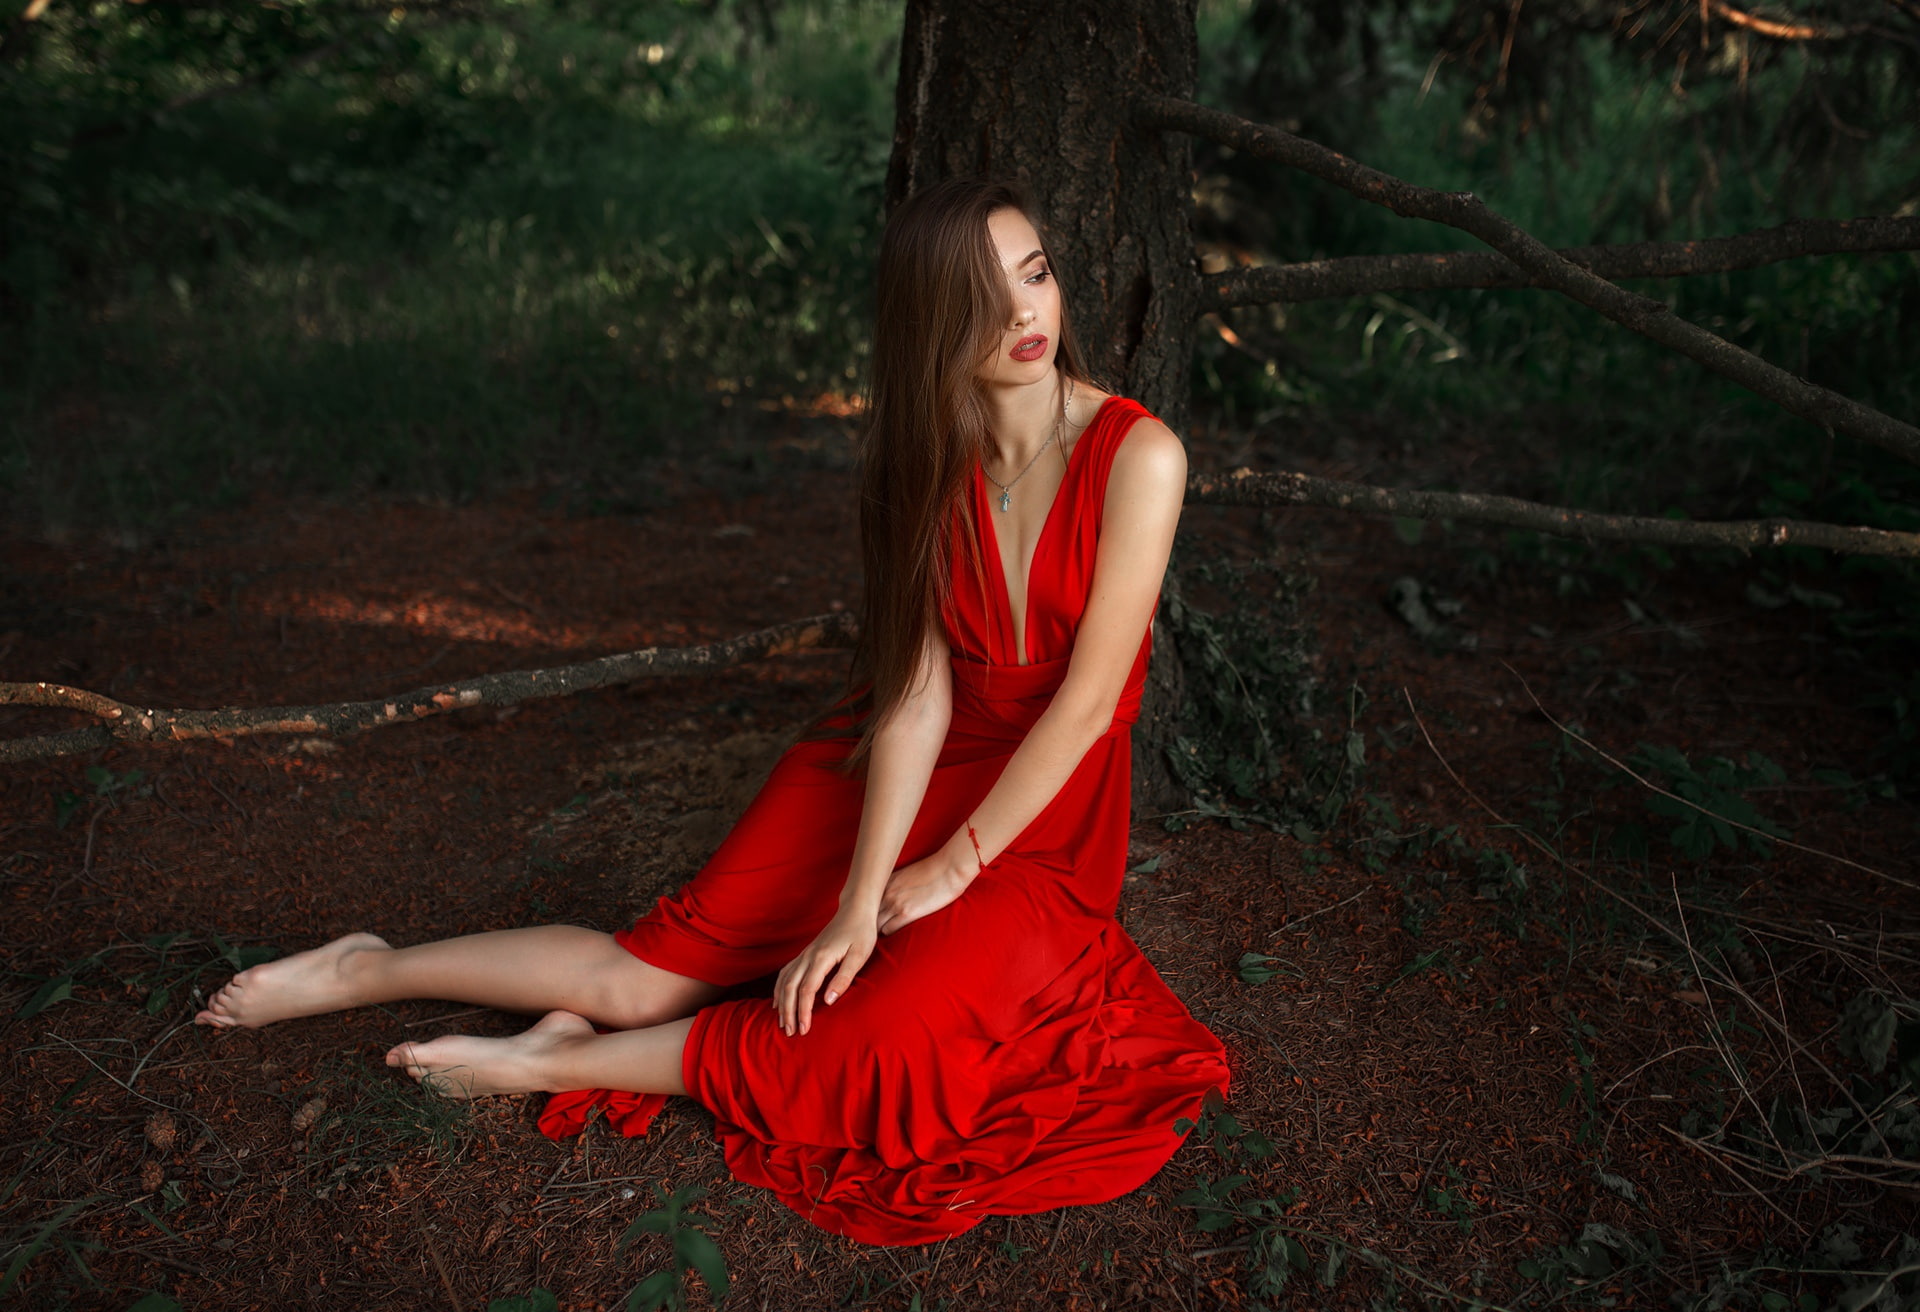 Free download | HD wallpaper: women, red dress, barefoot, model ...